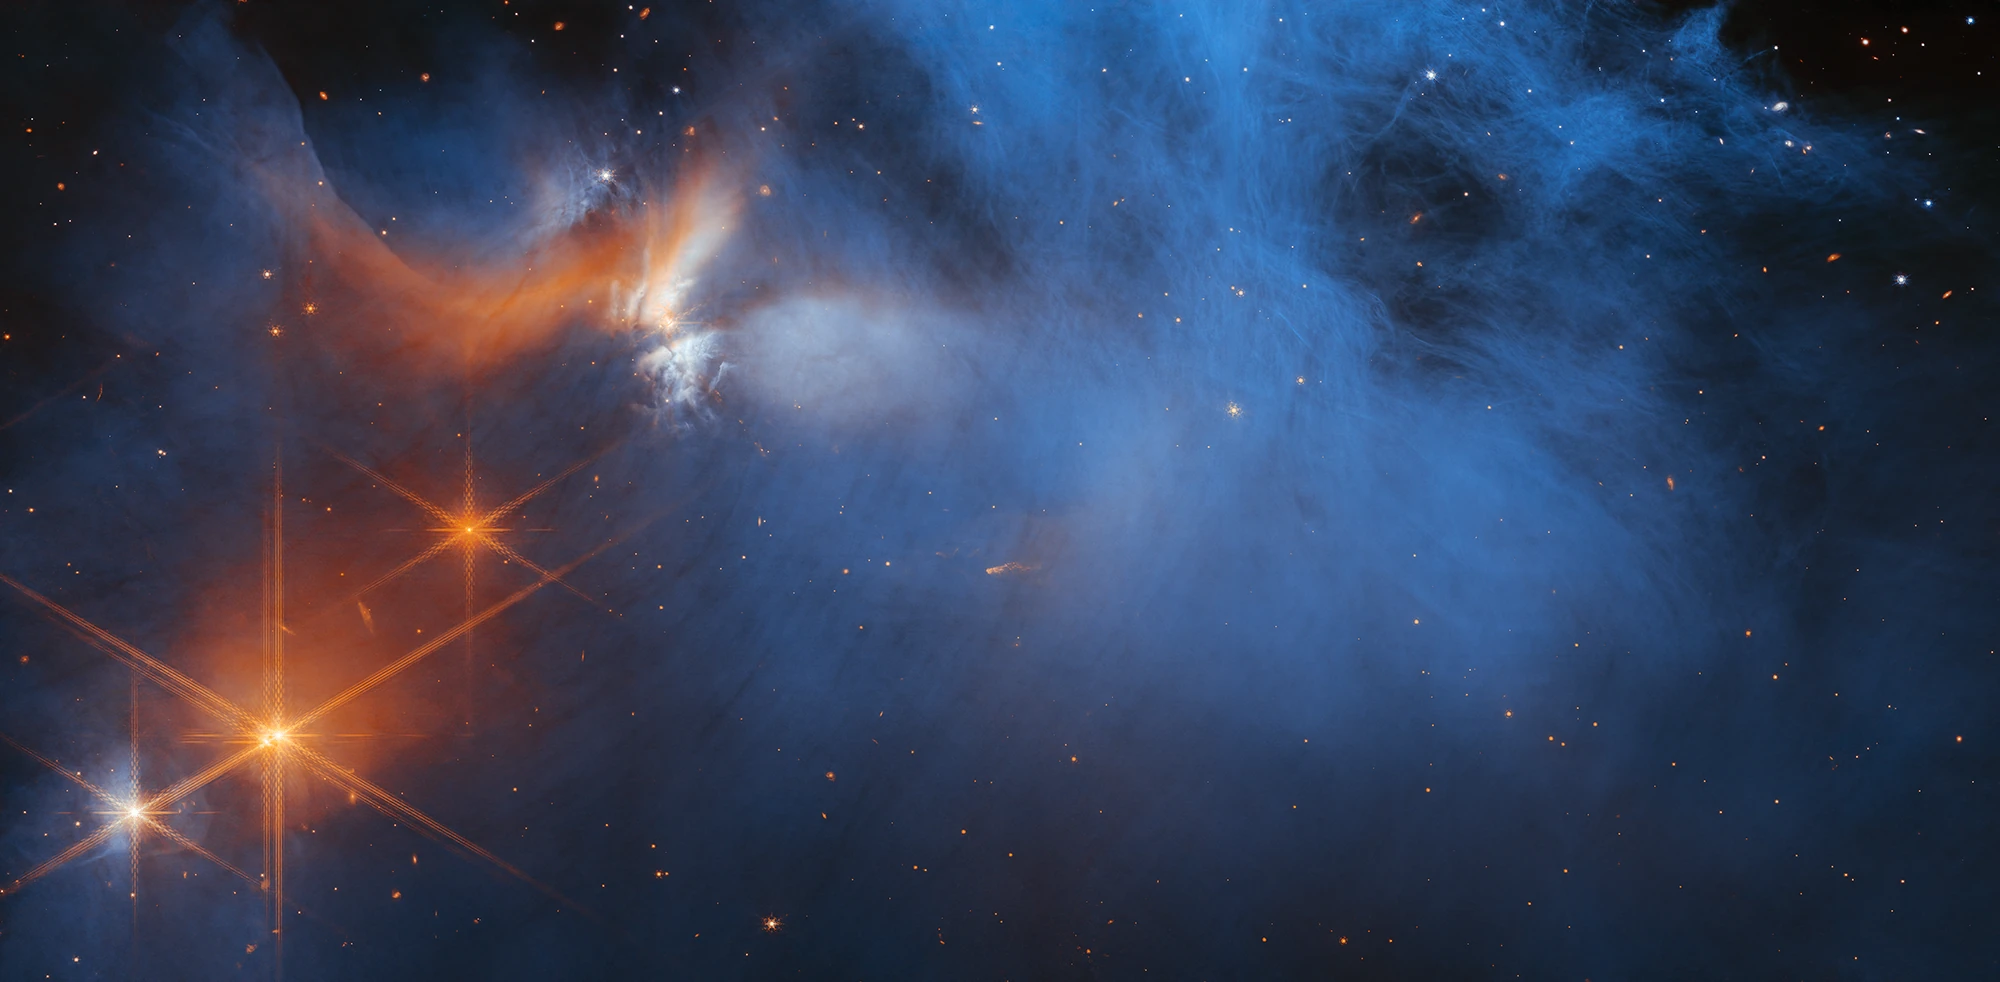 Il telescopio spaziale James Webb ha scoperto un elenco di molecole organiche complesse nei ghiacci di una nube molecolare.